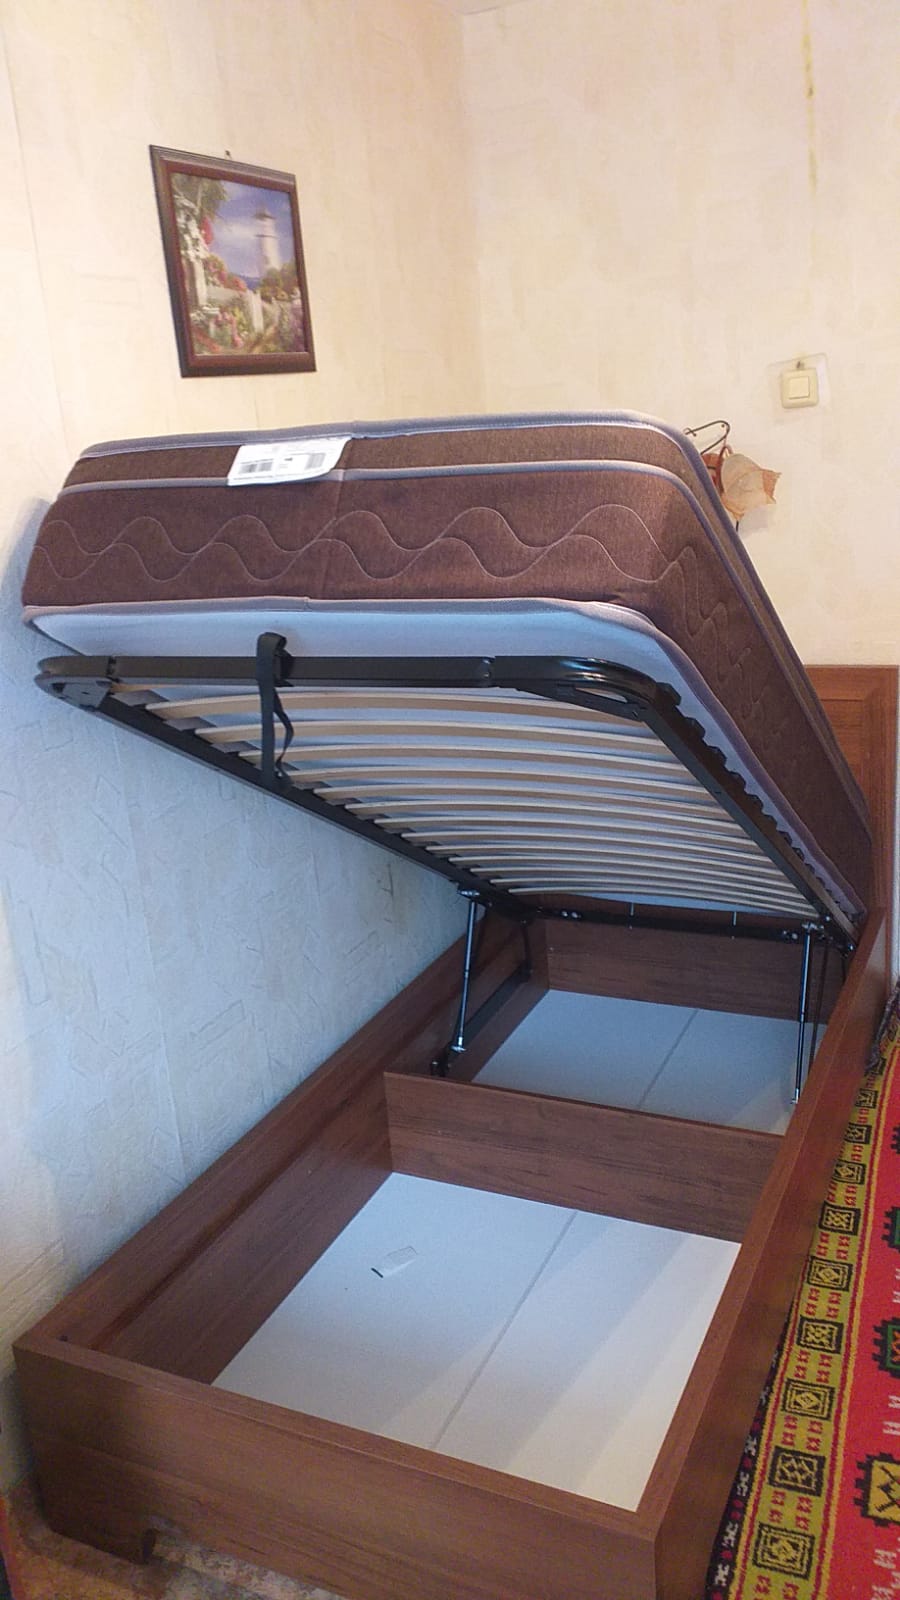 Двуспальная кровать "Мальта" 160 х 190 с ортопедическим основанием цвет девон / punto 06